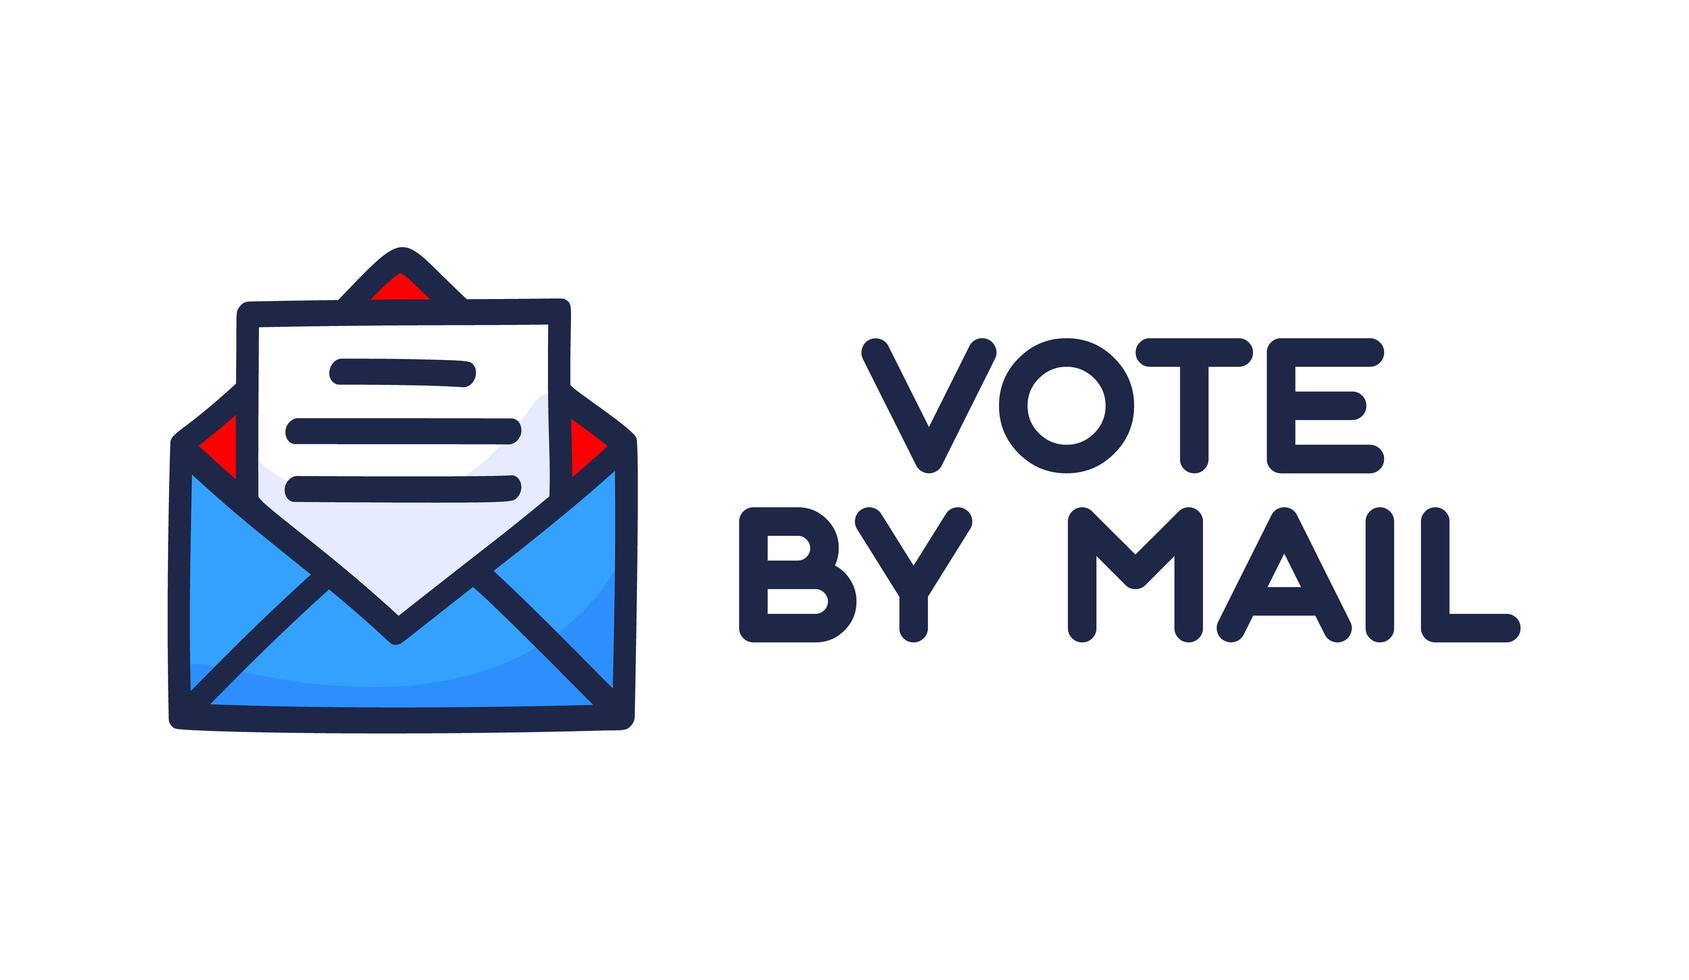 rösta med post vektorillustration. vara tryggt koncept för presidentvalet i USA 2020. mall för bakgrund, banner, kort, affisch med textinskrift. vektor